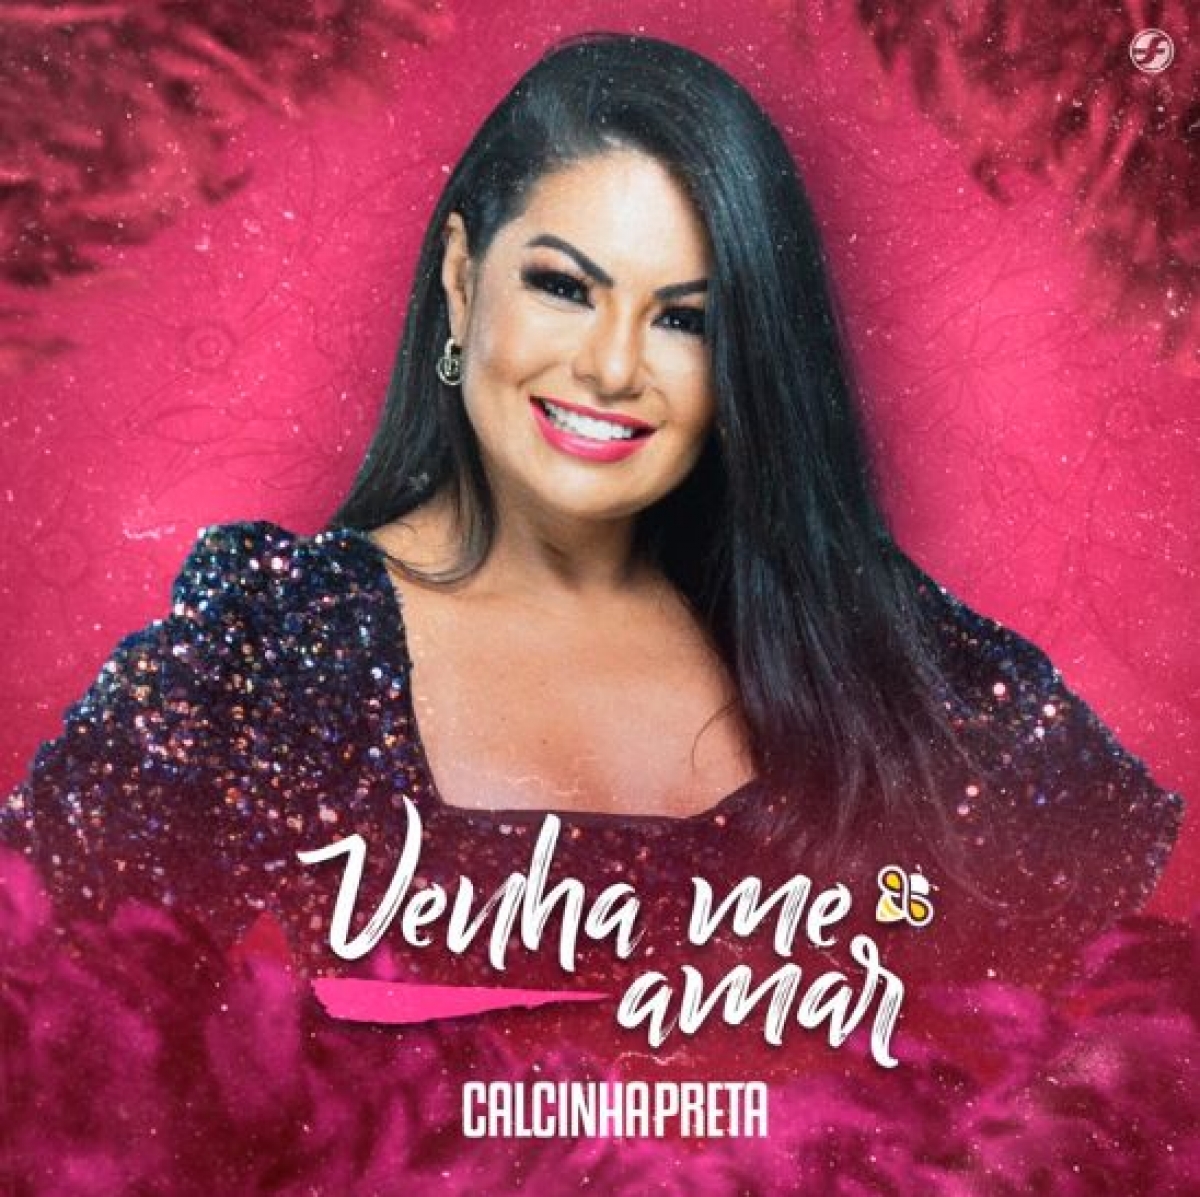 Calcinha Preta lança música inédita na voz de Paulinha Abelha; ouça (Imagem: Reprodução/ YouTube/ Calcinha Preta)